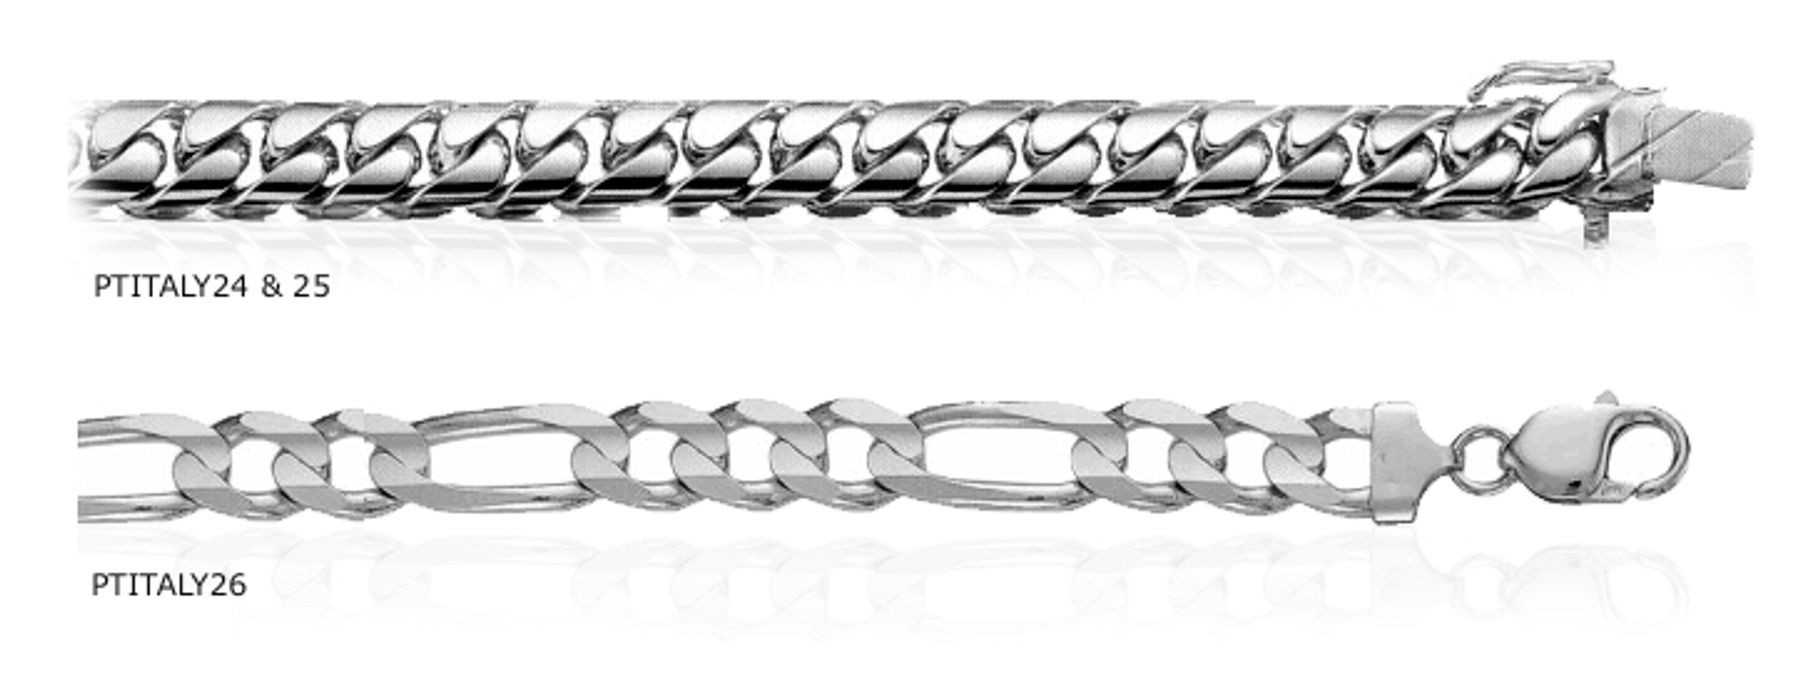 Platinum Solid Fancy Men's Chains Bracelets. View Chains and Bracelets